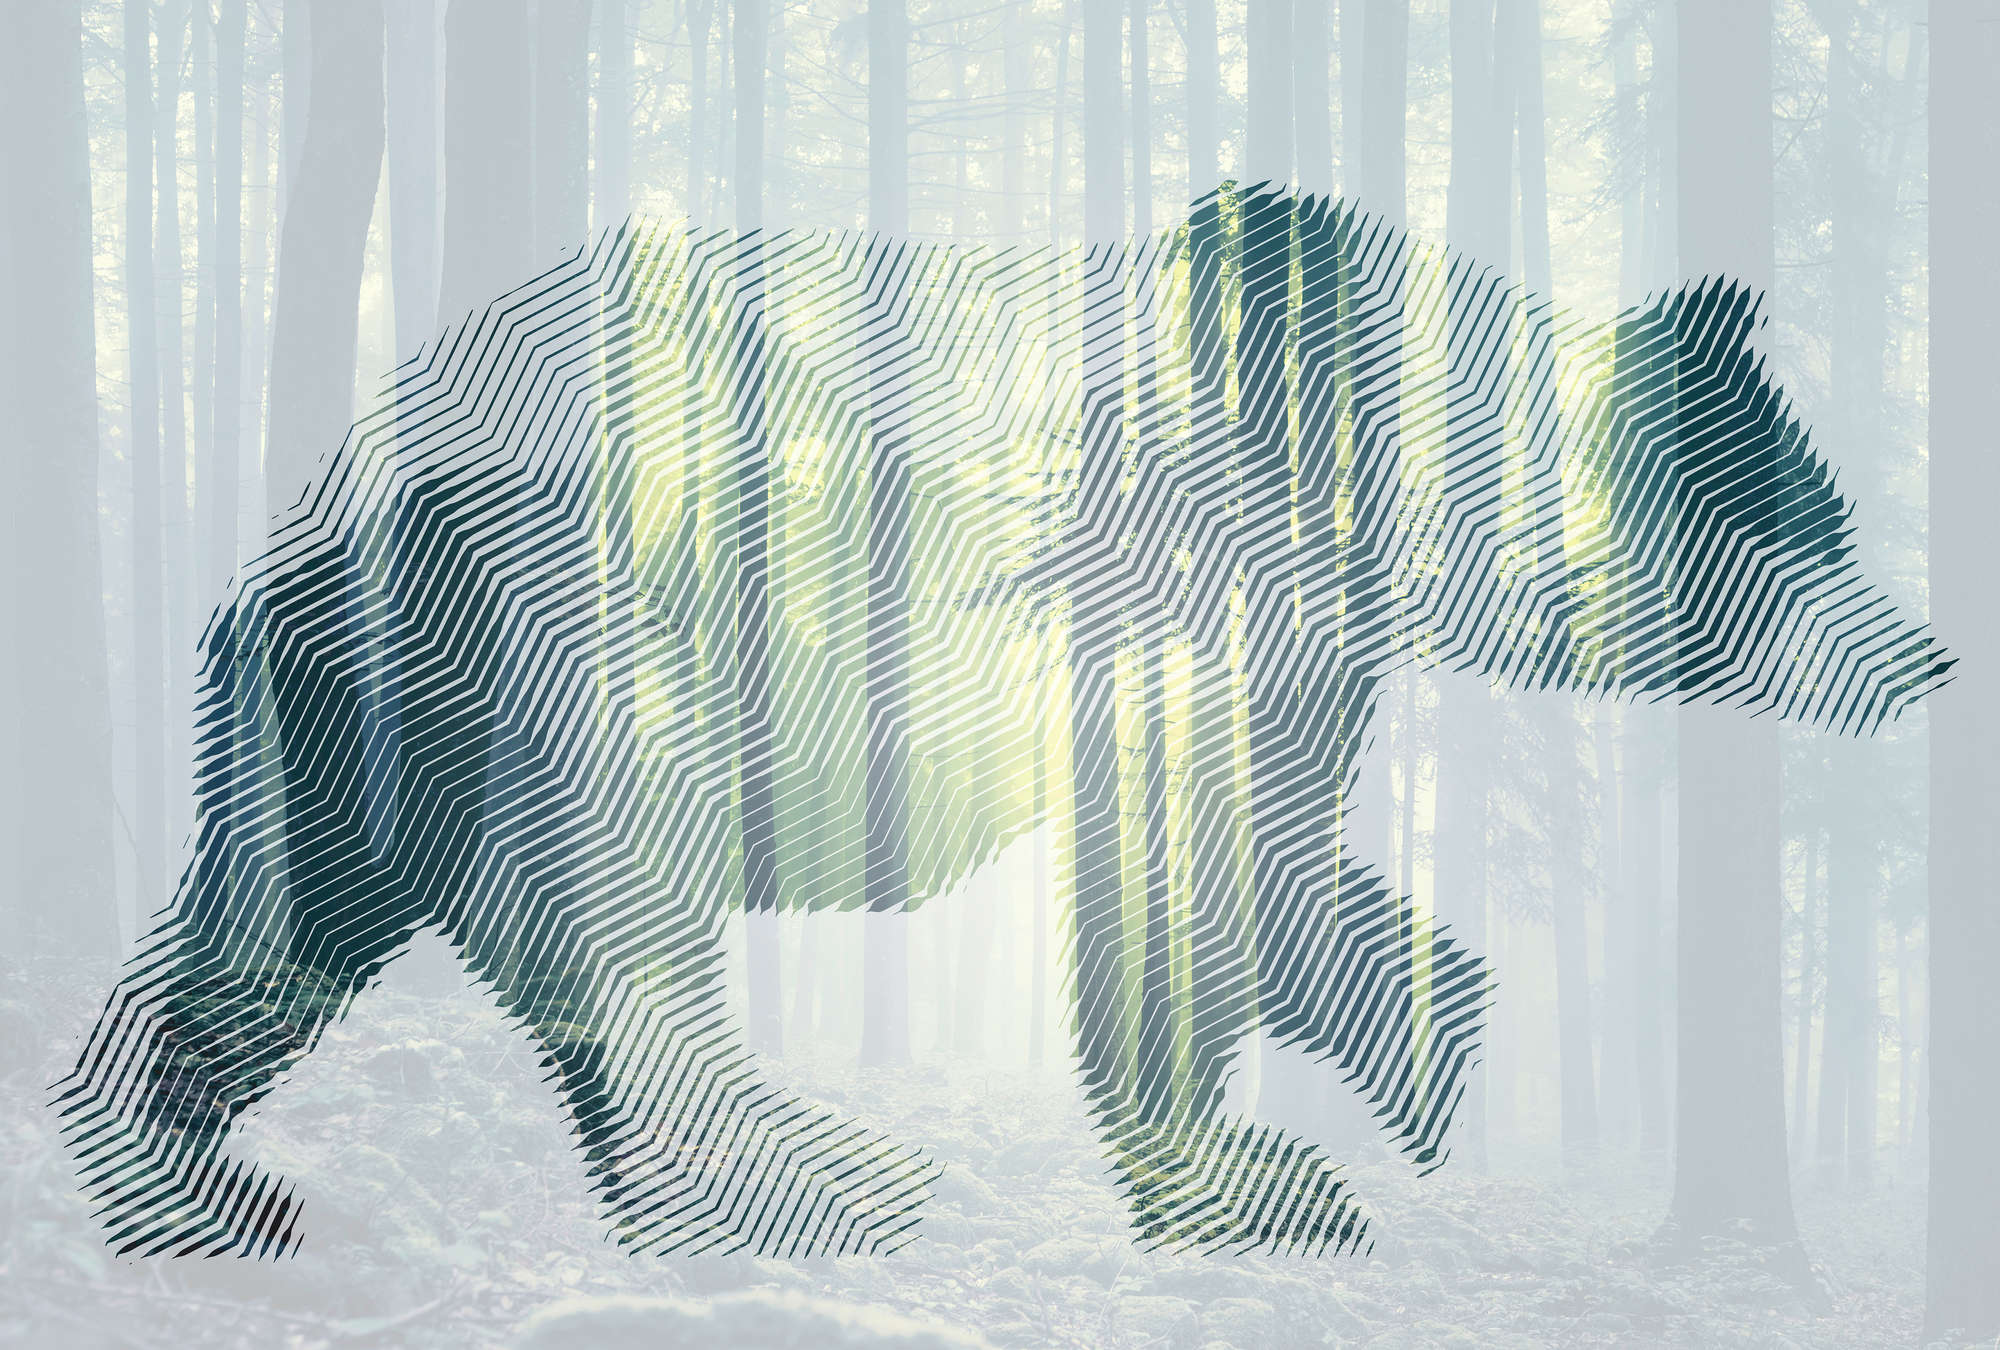             Fototapete Wald mit Bär & Grafikdesign – Grün, Weiß, Gelb
        